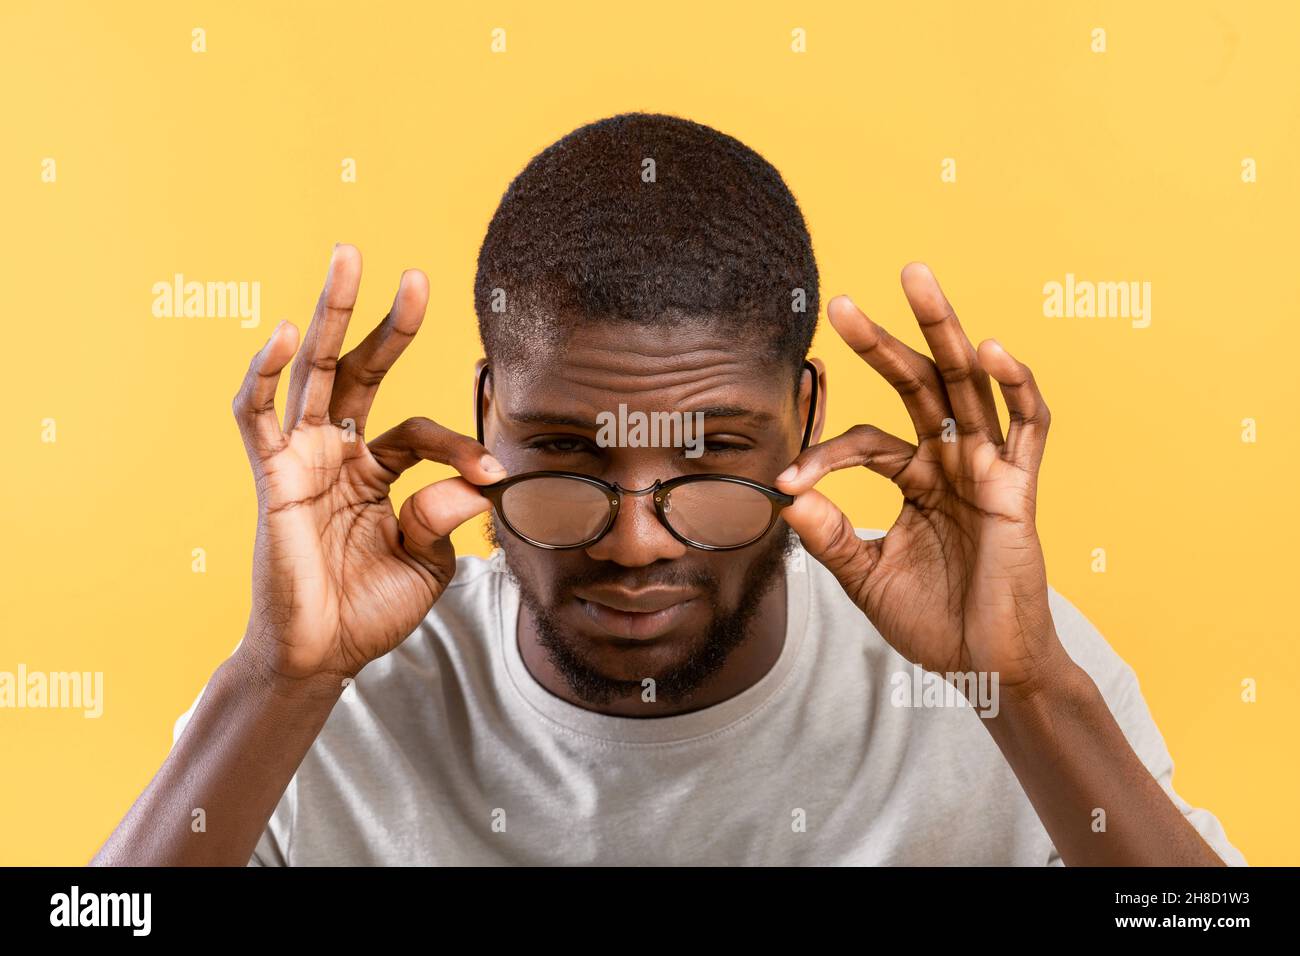 Schlechte Sehkraft. afroamerikanischer Kerl, der Augen zuckt und die Kamera anschaut, die Brille auf gelbem Hintergrund berührt Stockfoto